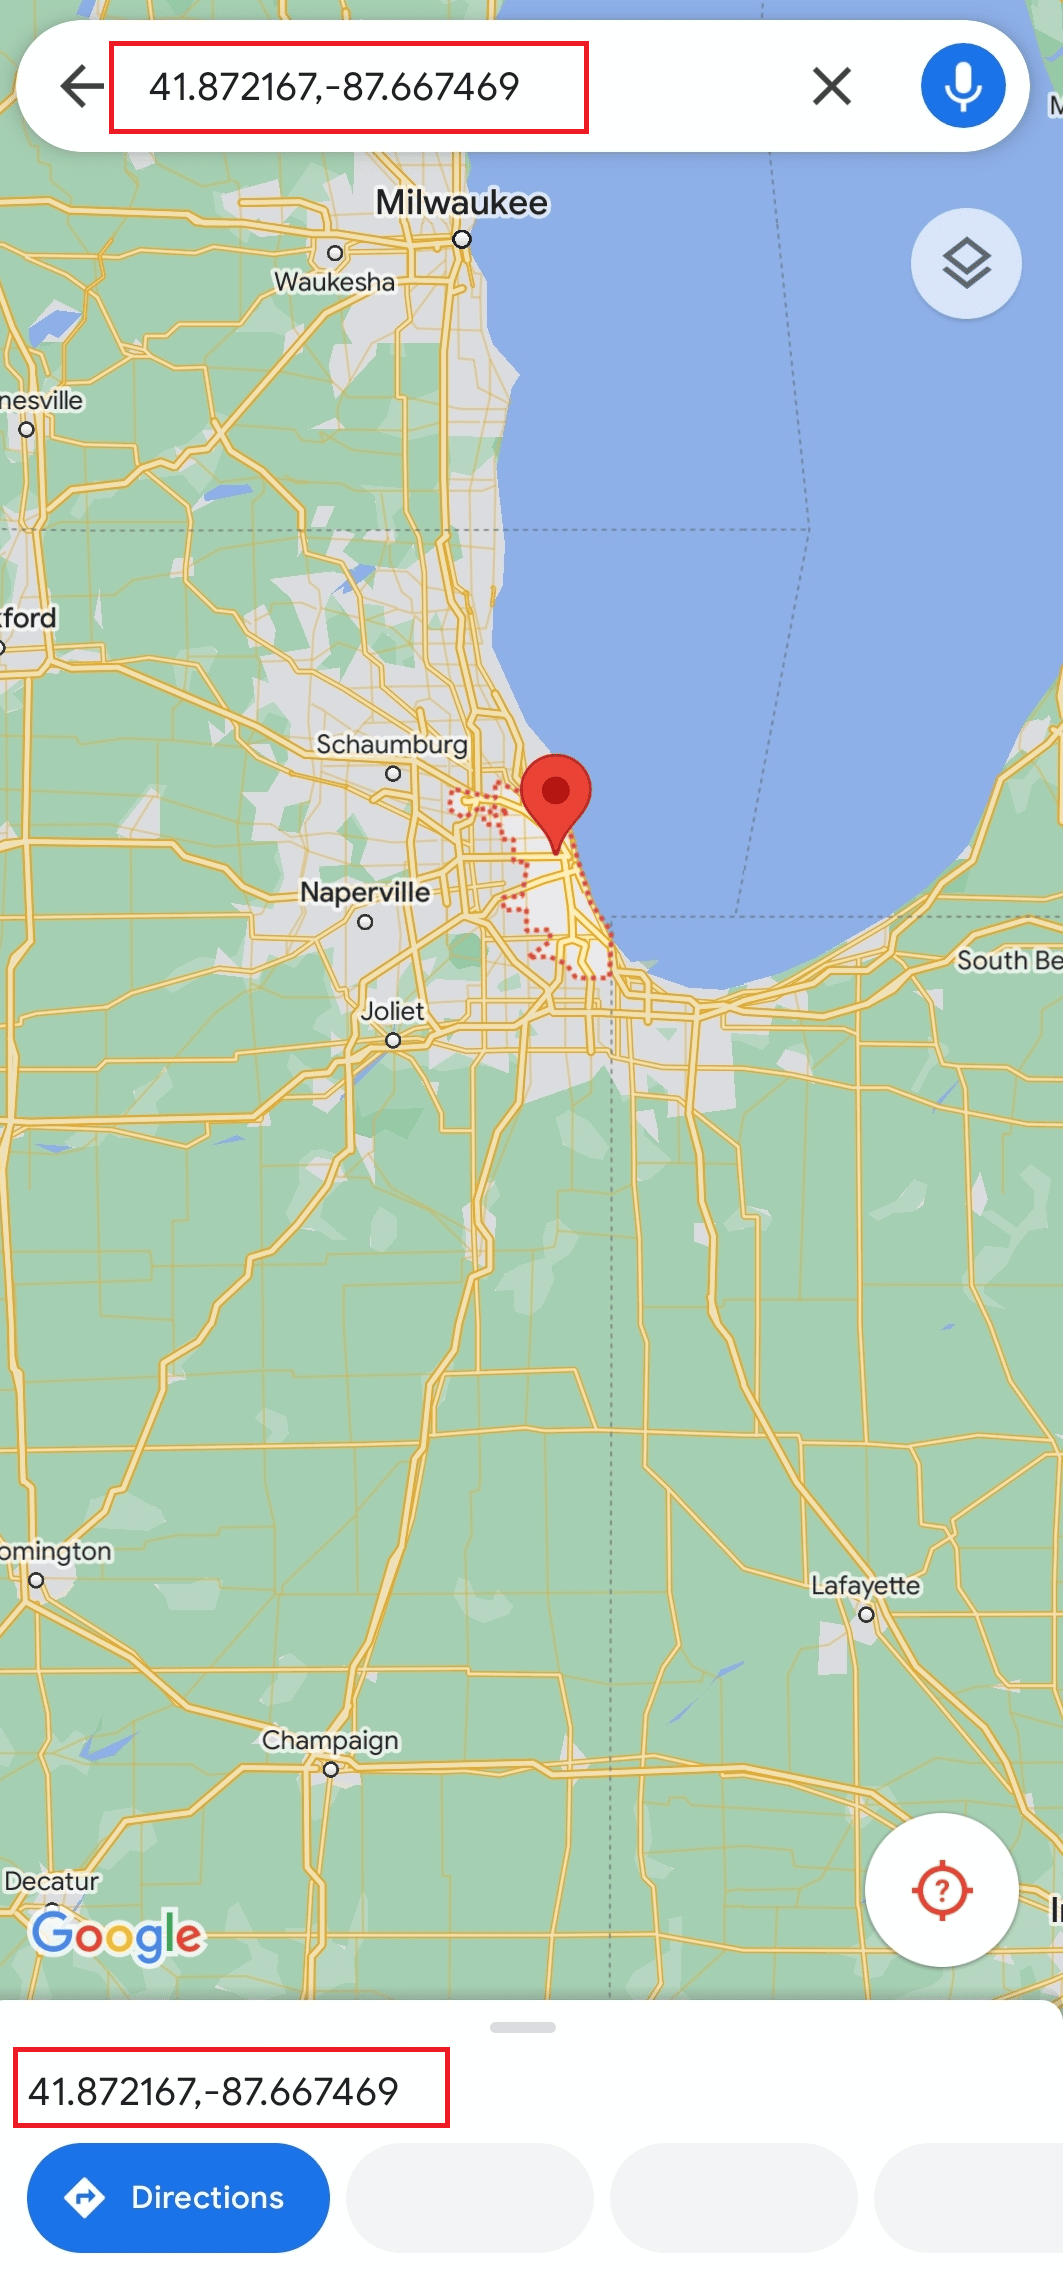 Suchen Sie nach Chicago und drücken Sie lange auf den Standort auf dem Bildschirm Ihres Mobilgeräts, um die Koordinaten zu erhalten (41,87216, - 87,66746).